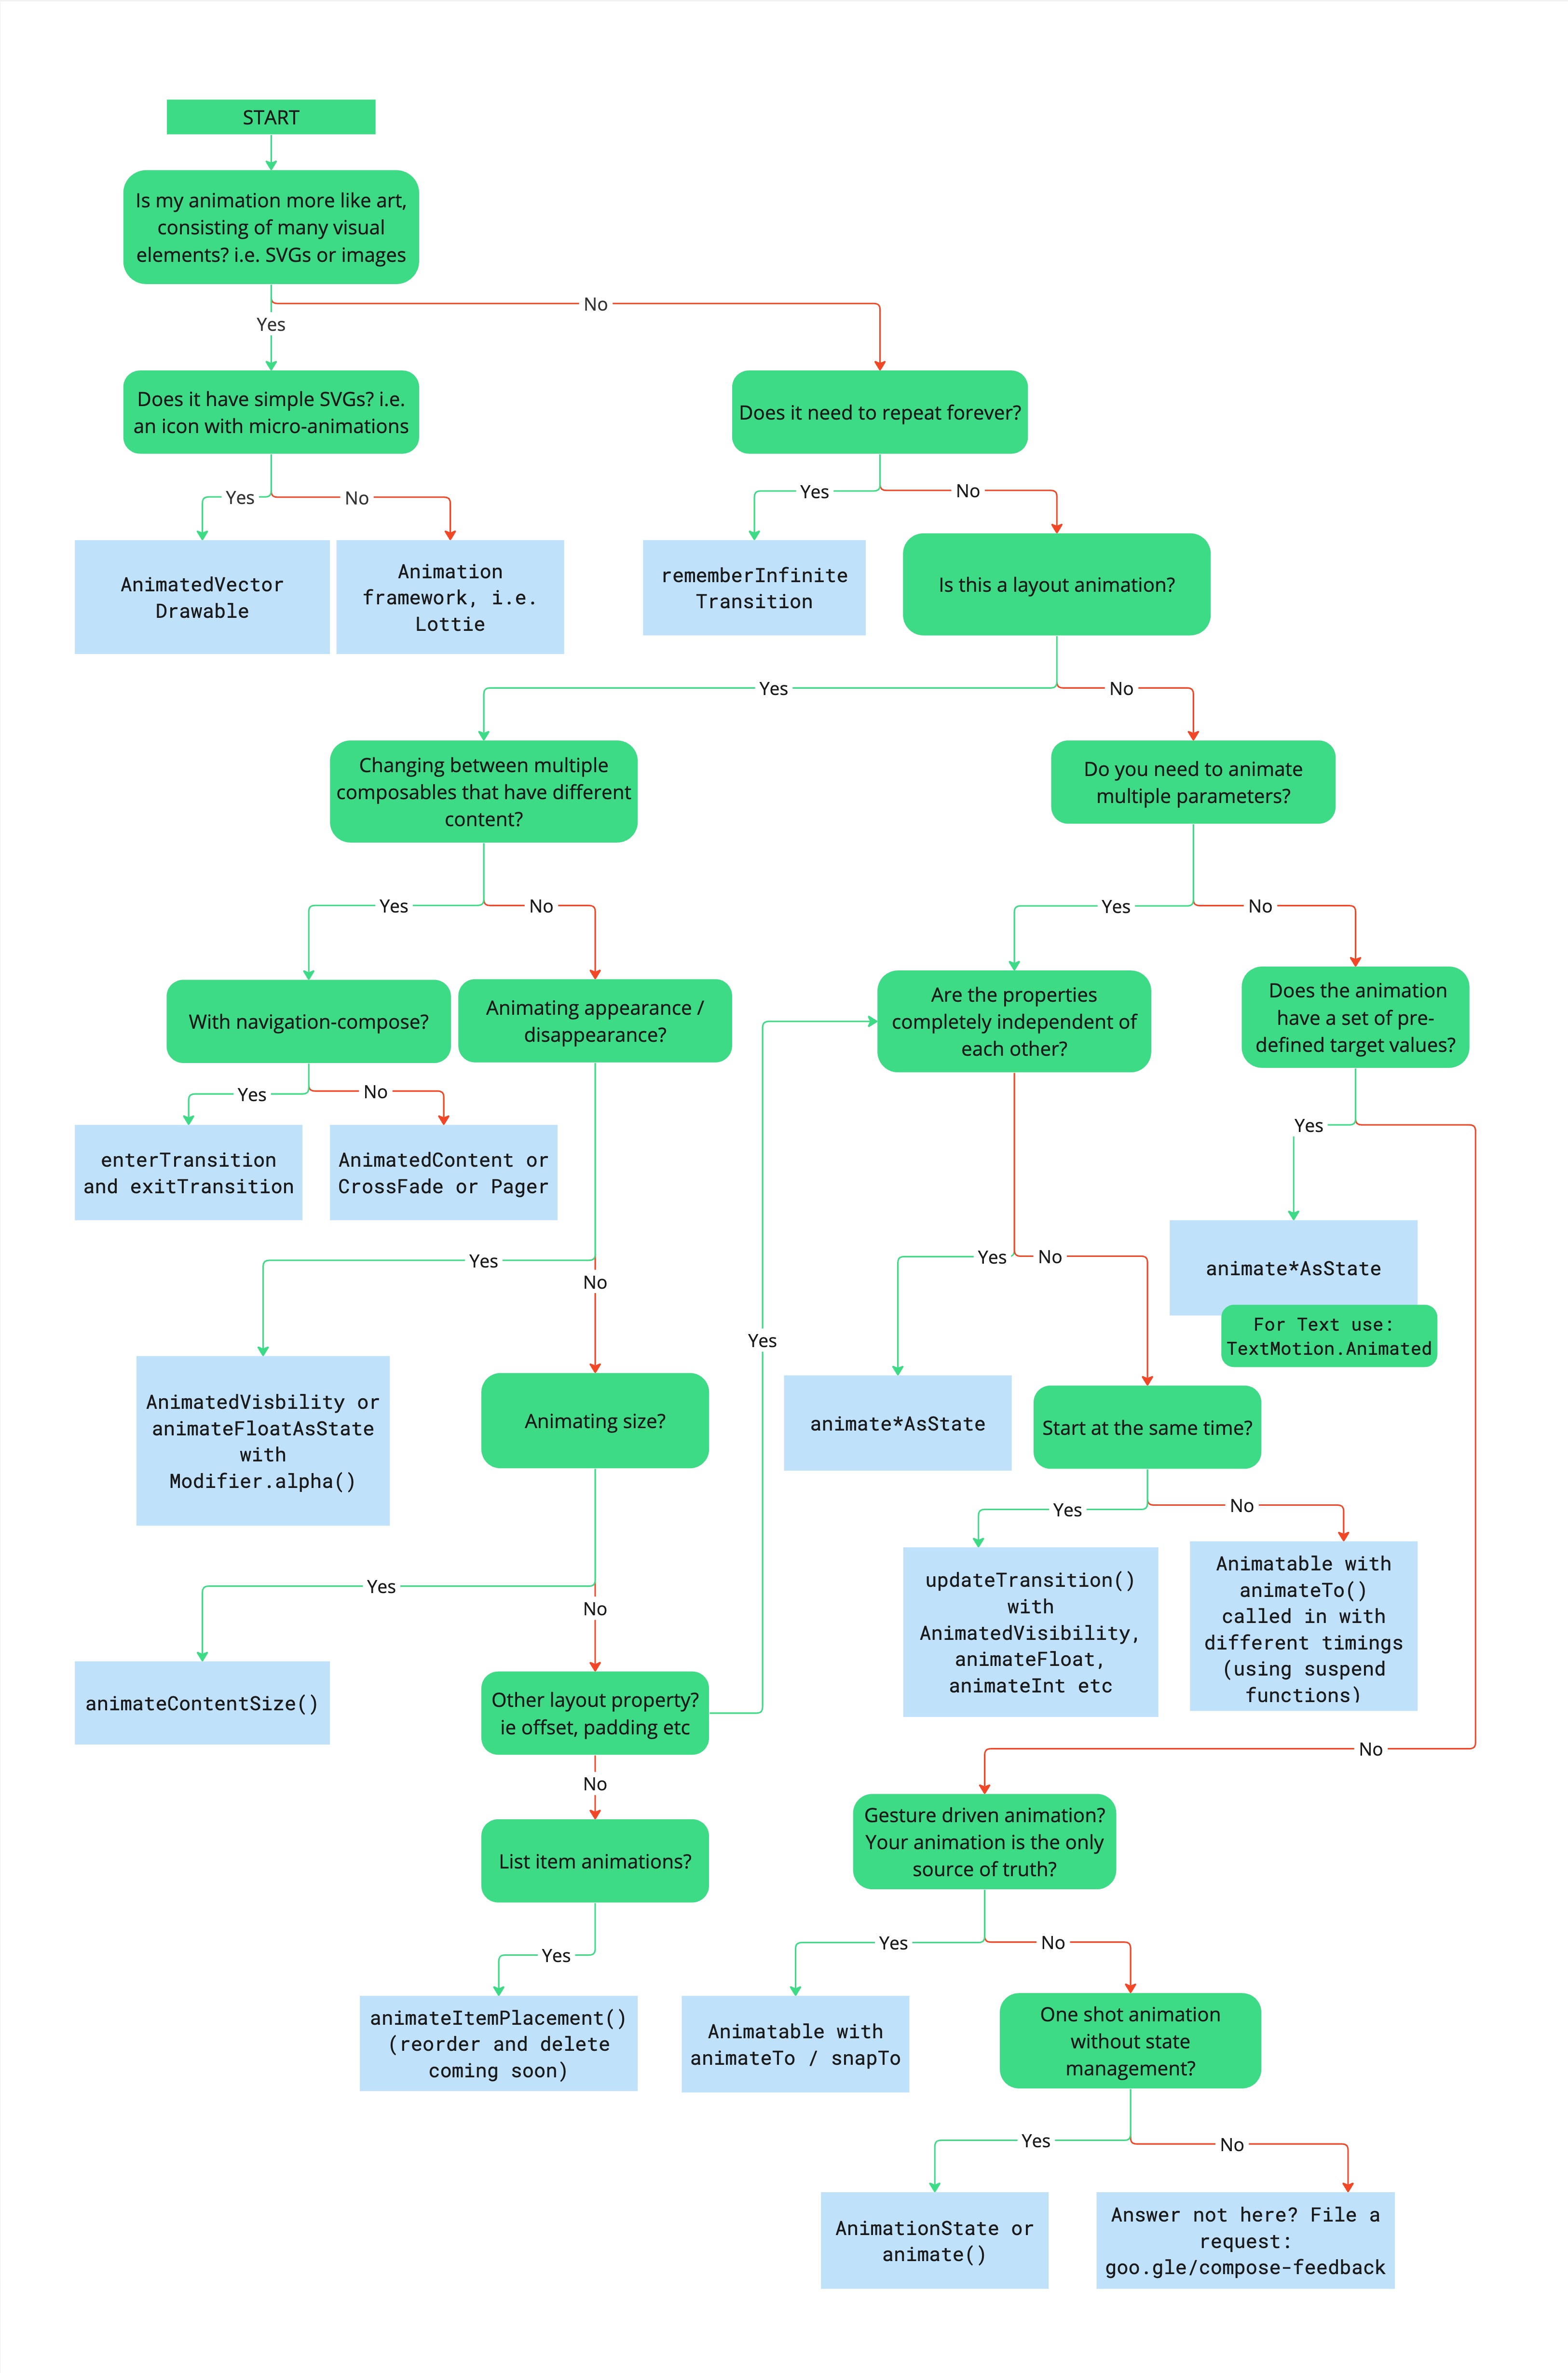 Fluxograma descrevendo a árvore de decisões para escolha da API de animação
adequada